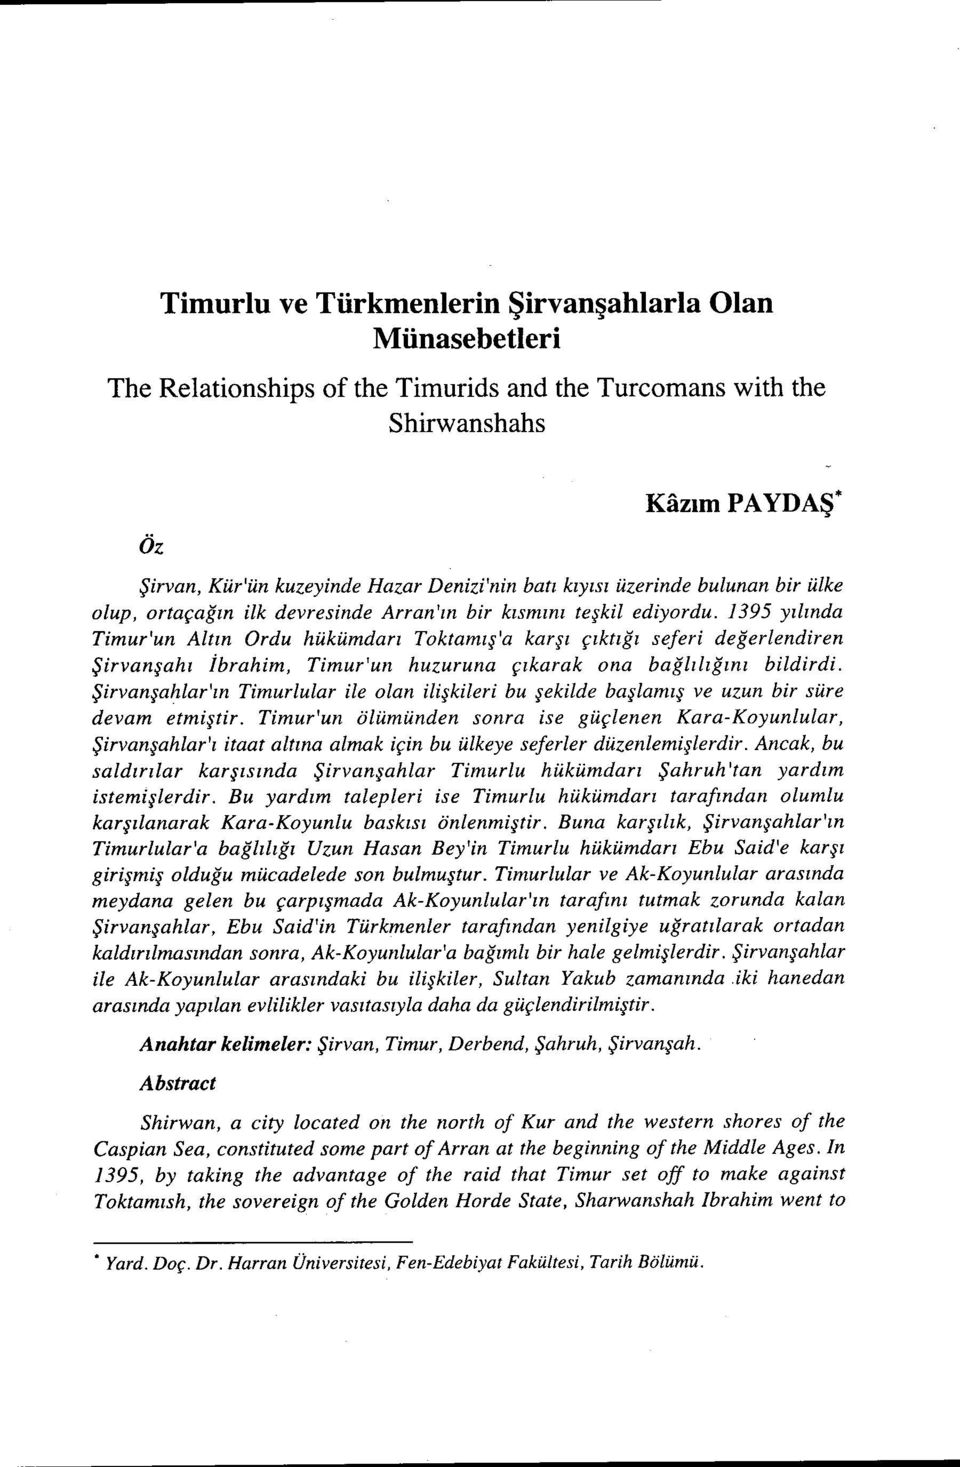 1395 yılında Timur'un Altın Ordu hükümdarı Toktamış'a karşı çıktığı seferi değerlendiren Şirvanşahı İbrahim, Timur'un huzuruna çıkarak ona bağlılığını bildirdi.